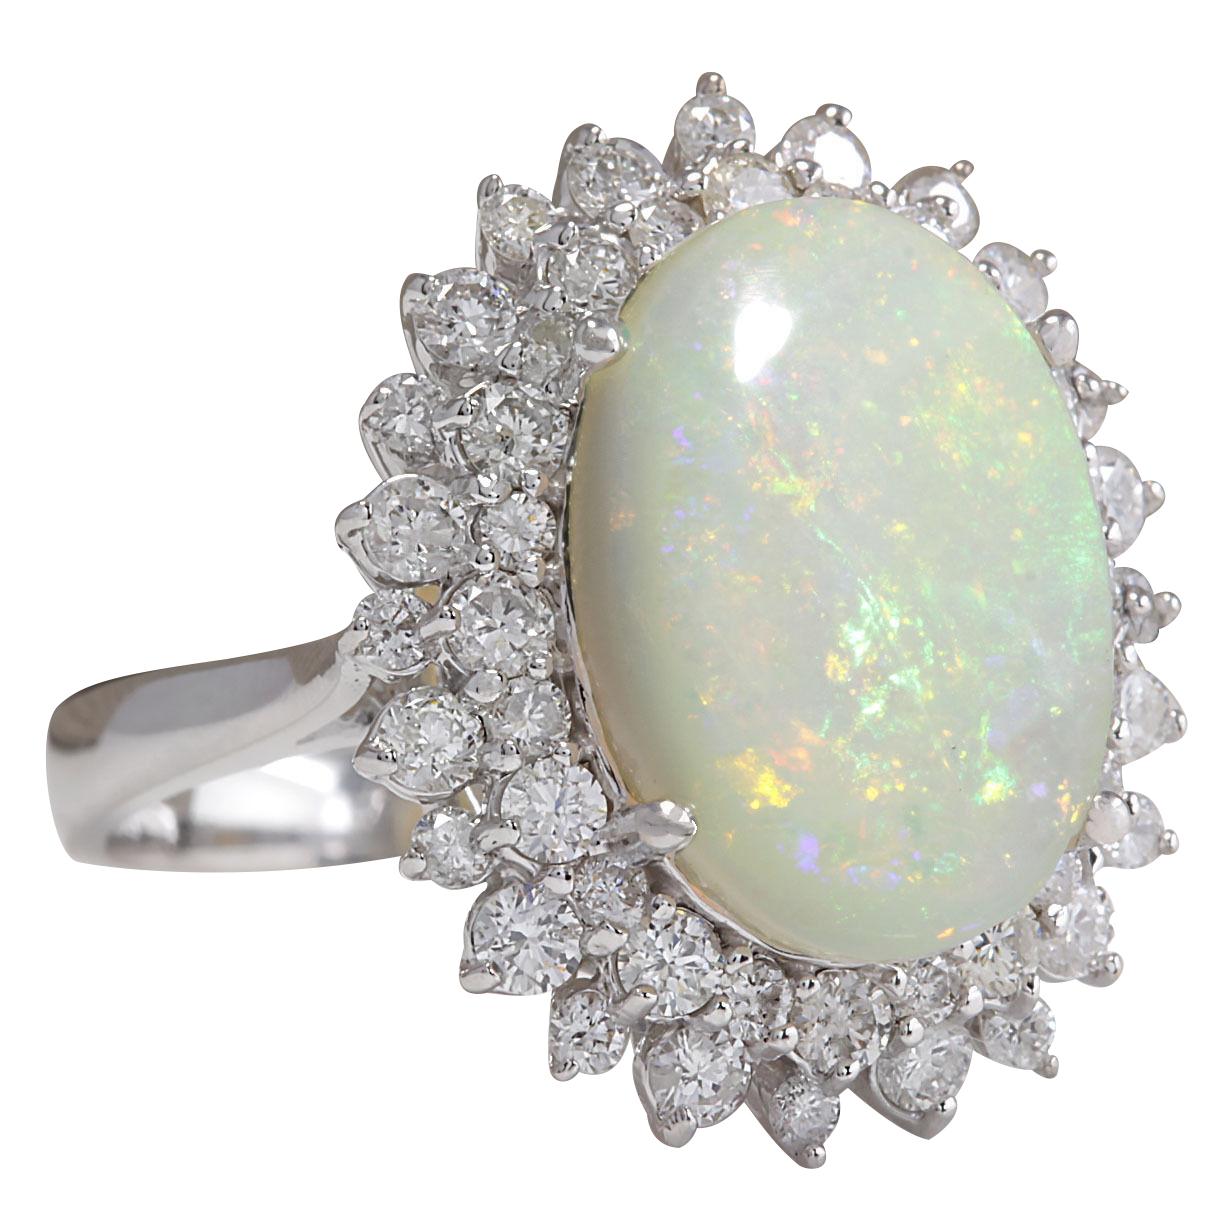 5.86 Carat Natural Opal 14 Karat White Gold Diamond Ring
Stamped: 14K White Gold
Total Ring Weight: 5.8 Grams
Total Natural Opal Weight is 4.36 Carat (Measures: 16.00x12.00 mm)
Color: Multicolor
Total Natural Diamond Weight is 1.50 Carat
Color: F-G,